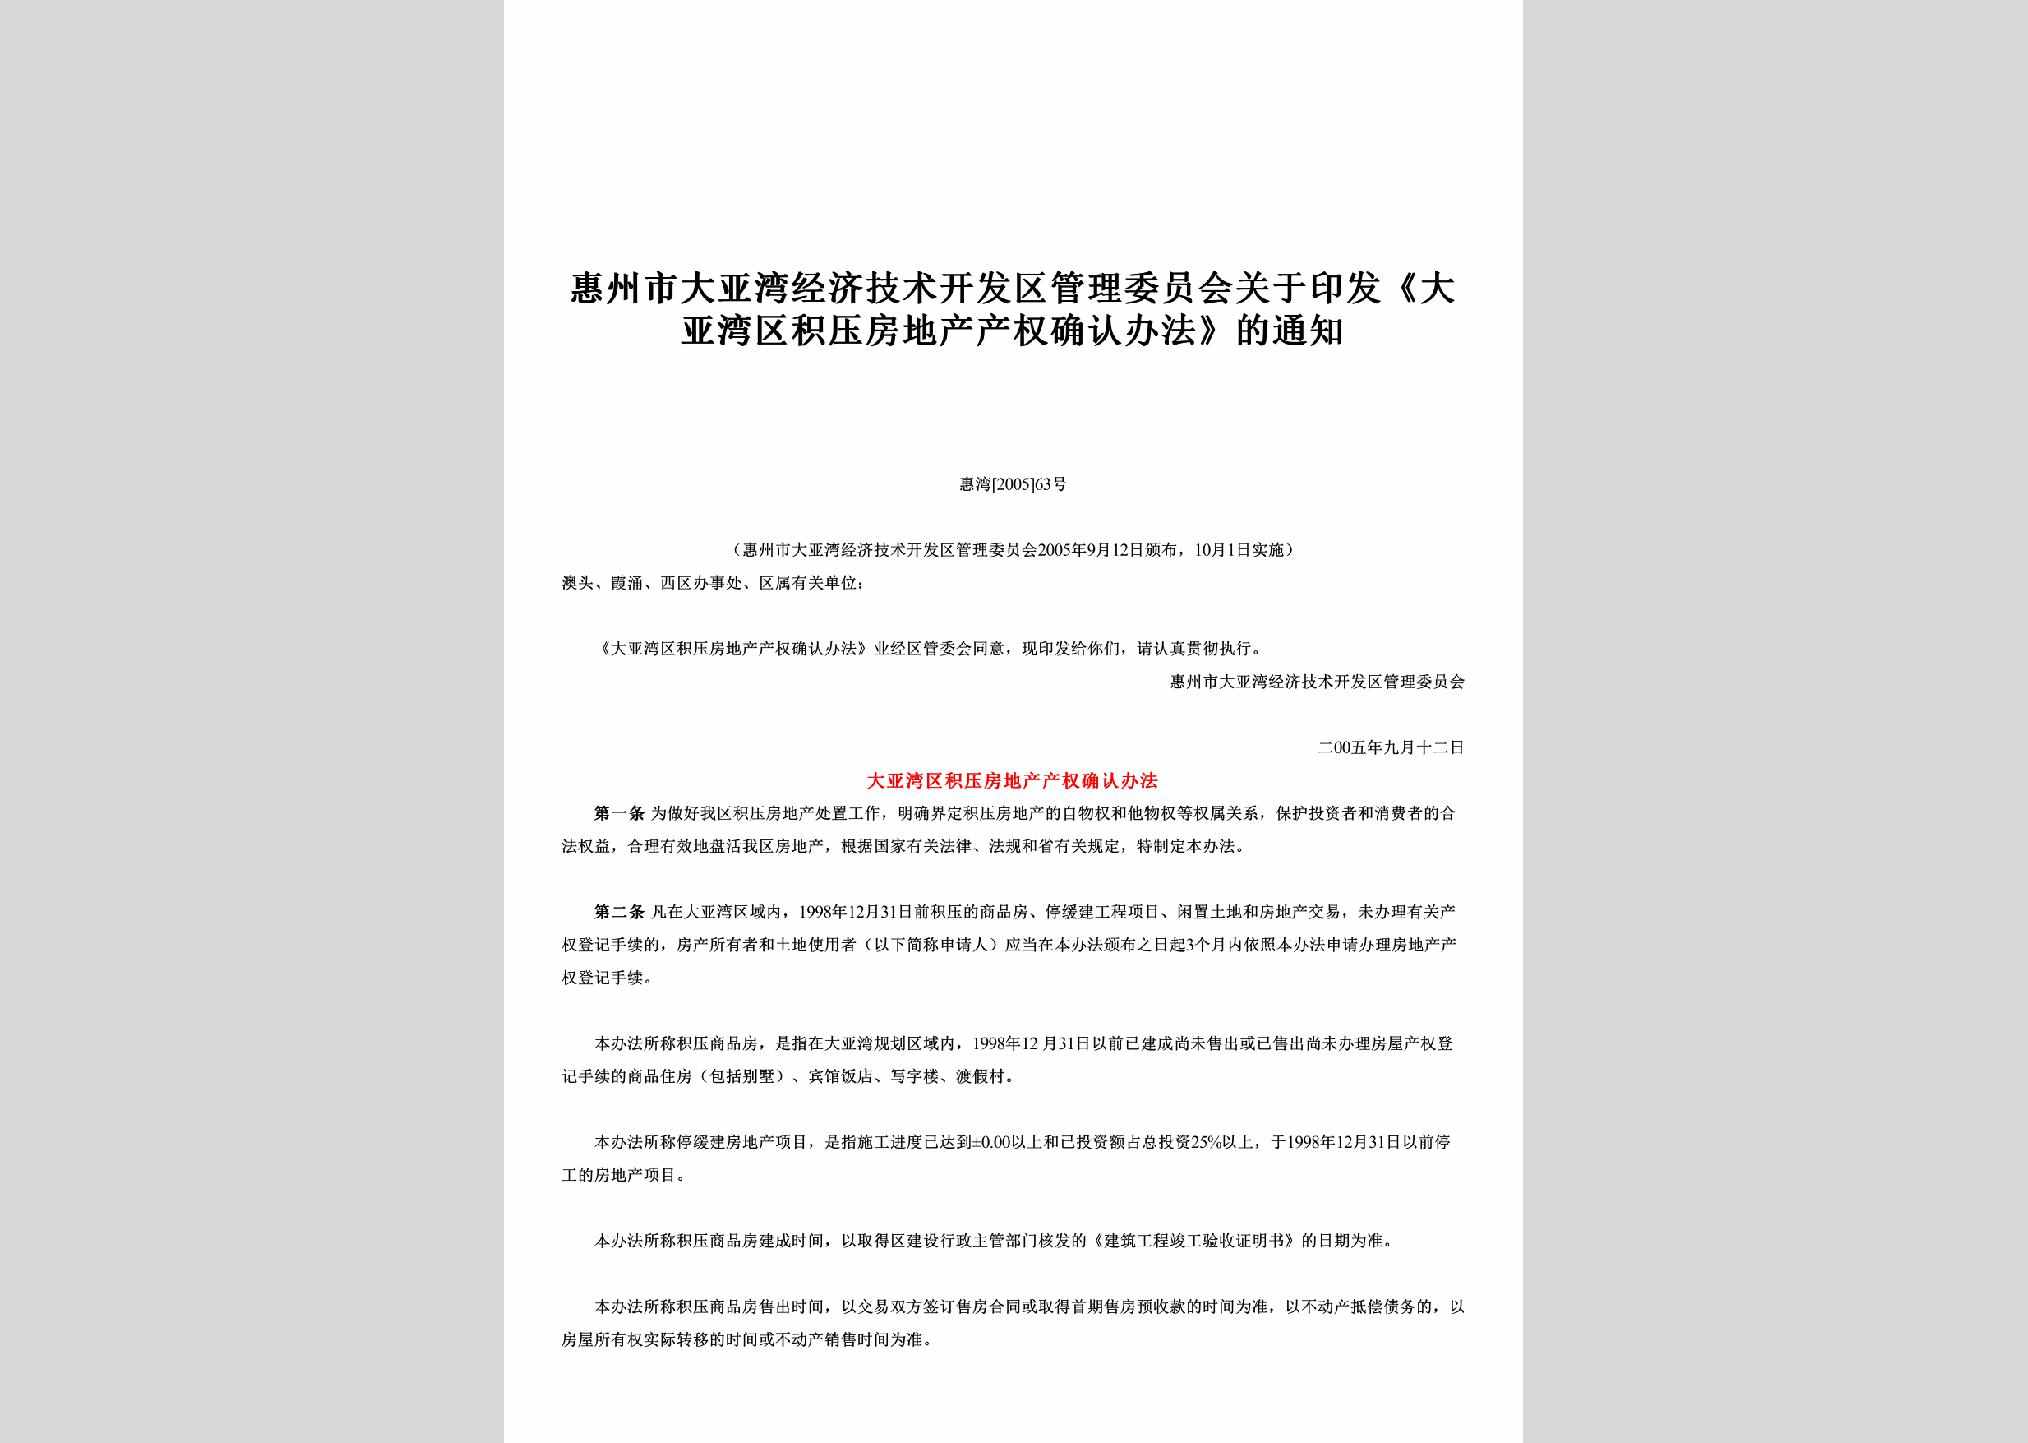 惠湾[2005]63号：关于印发《大亚湾区积压房地产产权确认办法》的通知